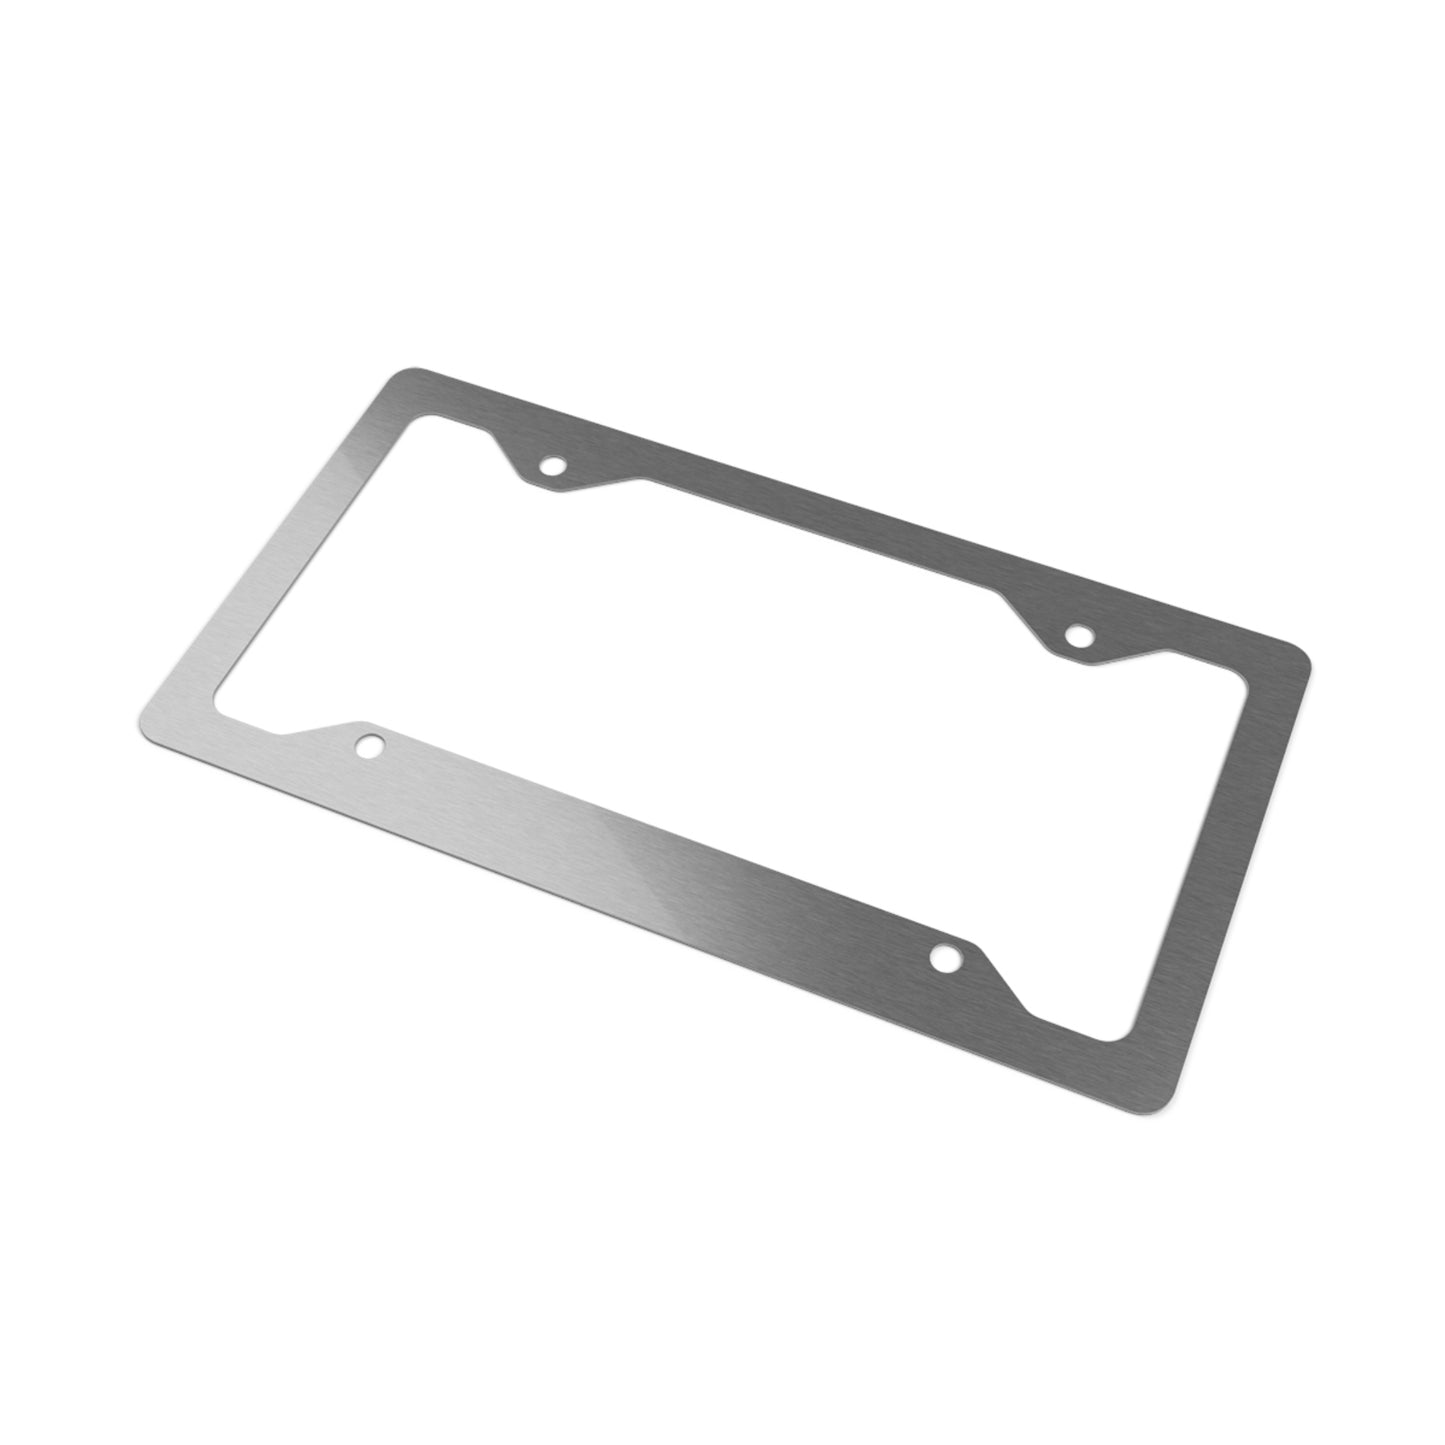 SSCA Metal License Plate Frame v.2